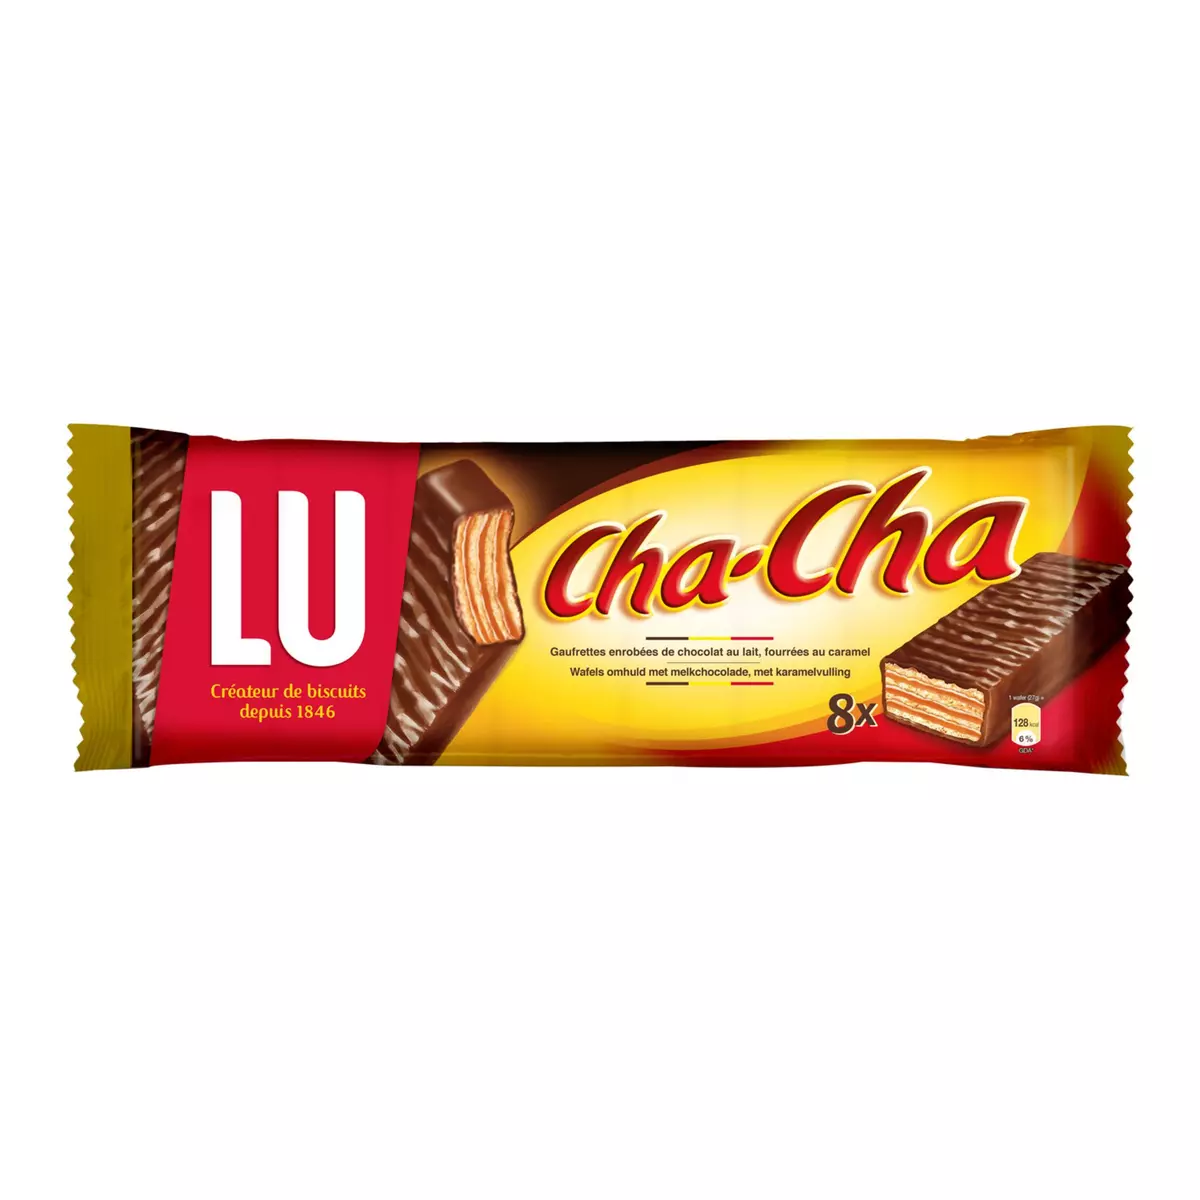 LU Cha cha 8 biscuits 8x27g